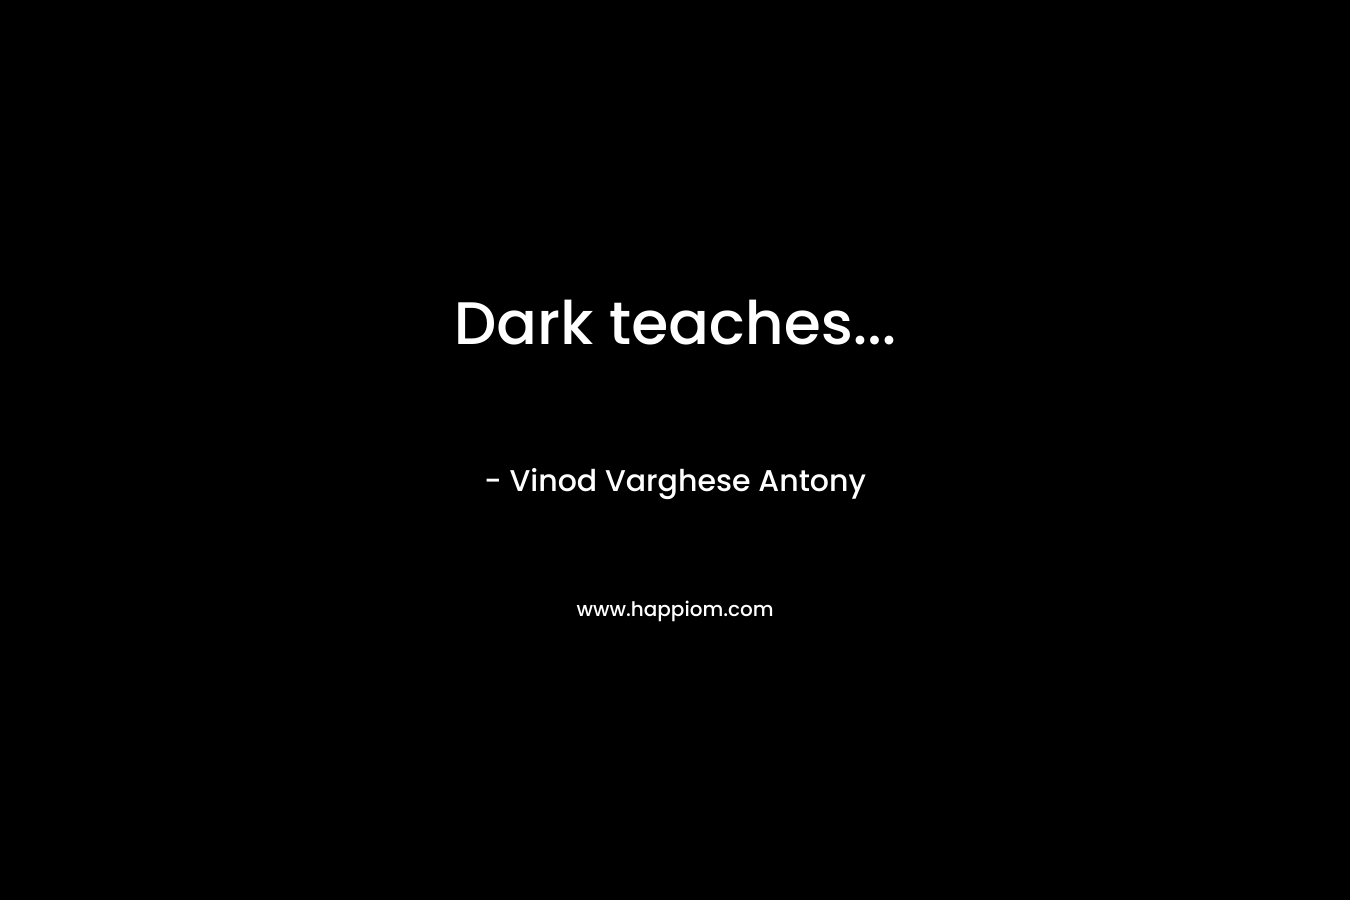 Dark teaches...